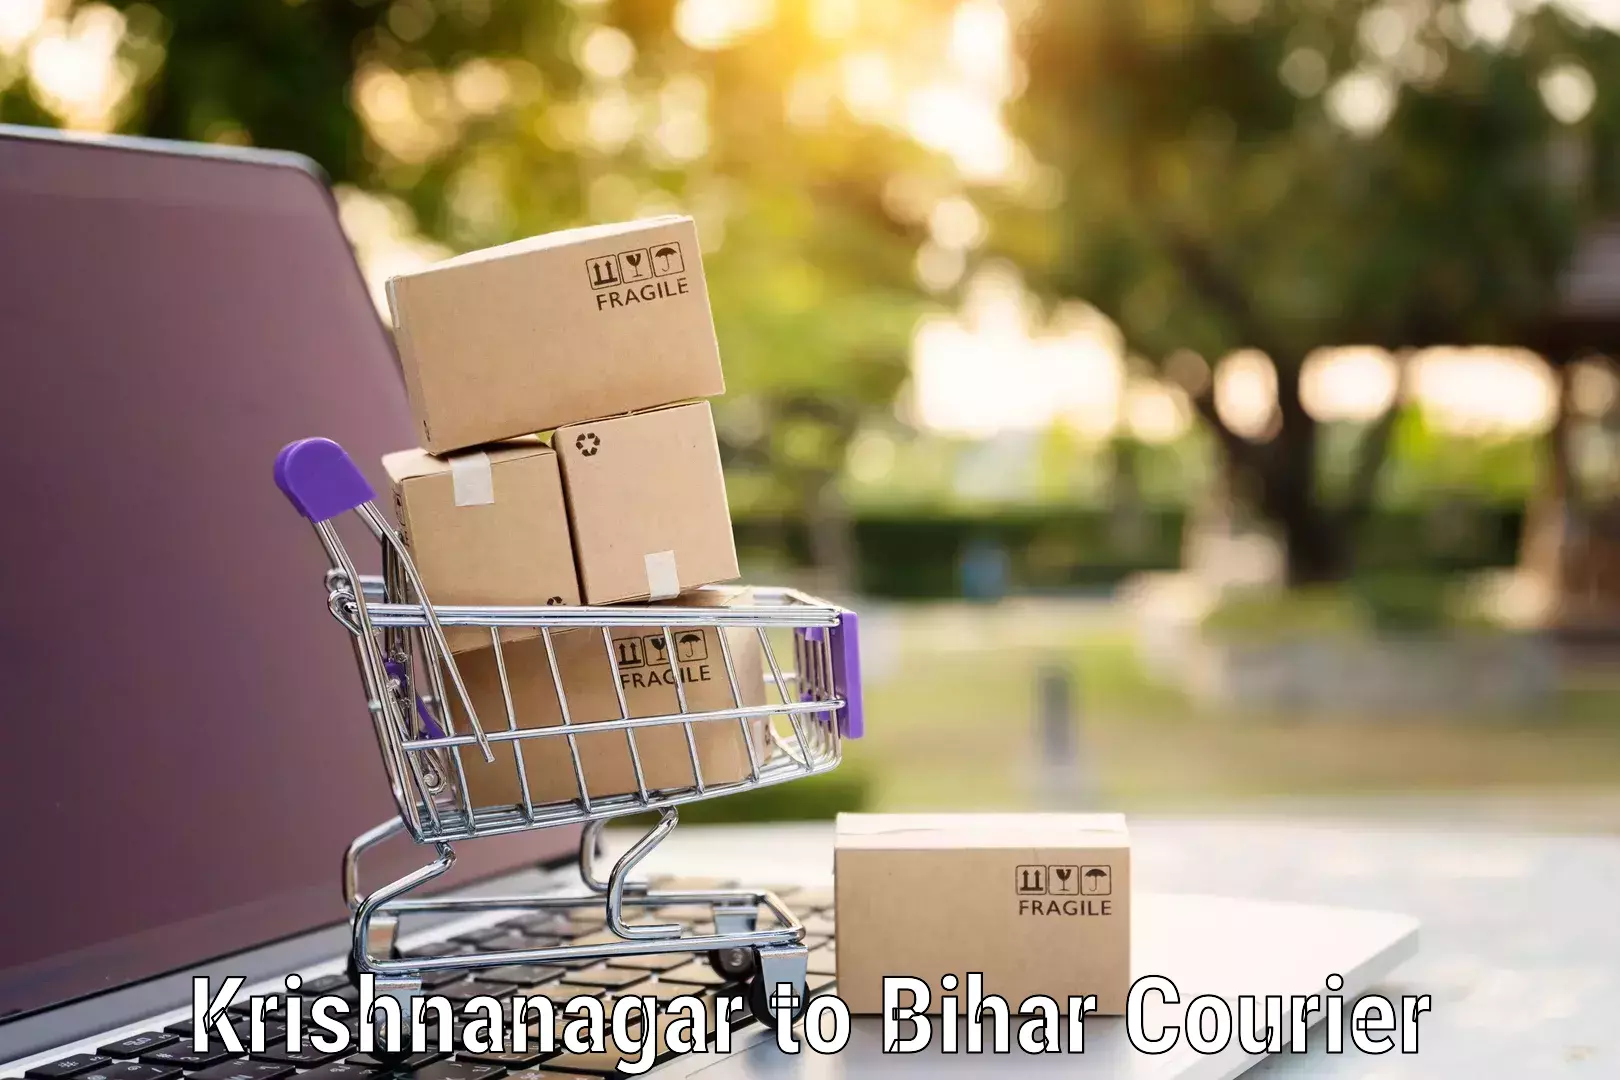 Full-service relocation Krishnanagar to Bihar